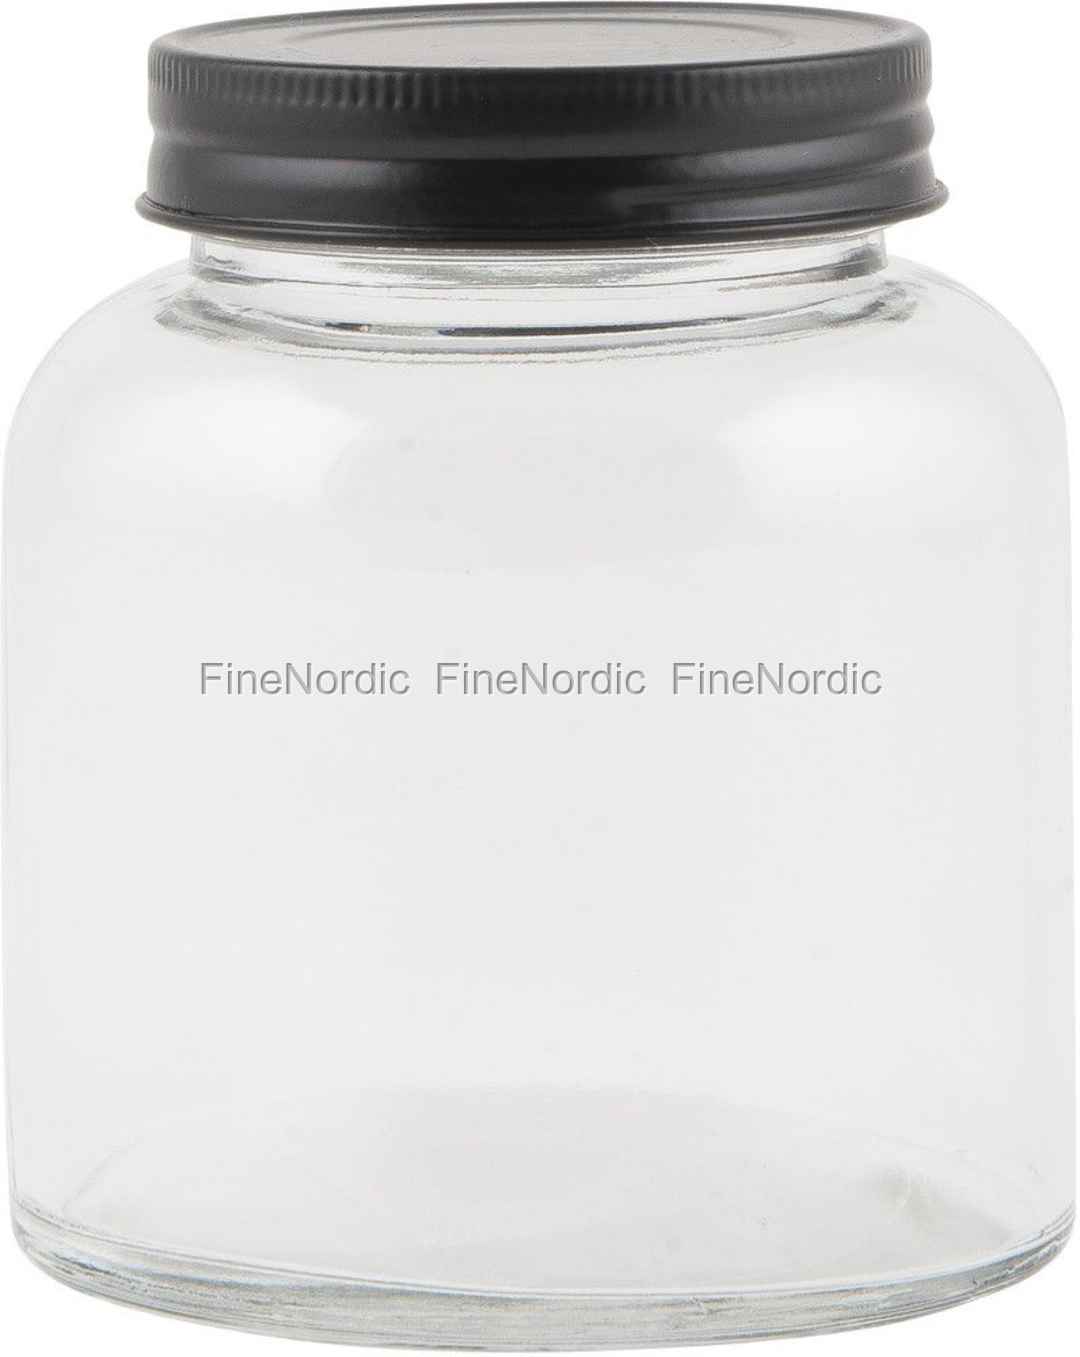 Weißer Plastikdeckel für Joghurtglas